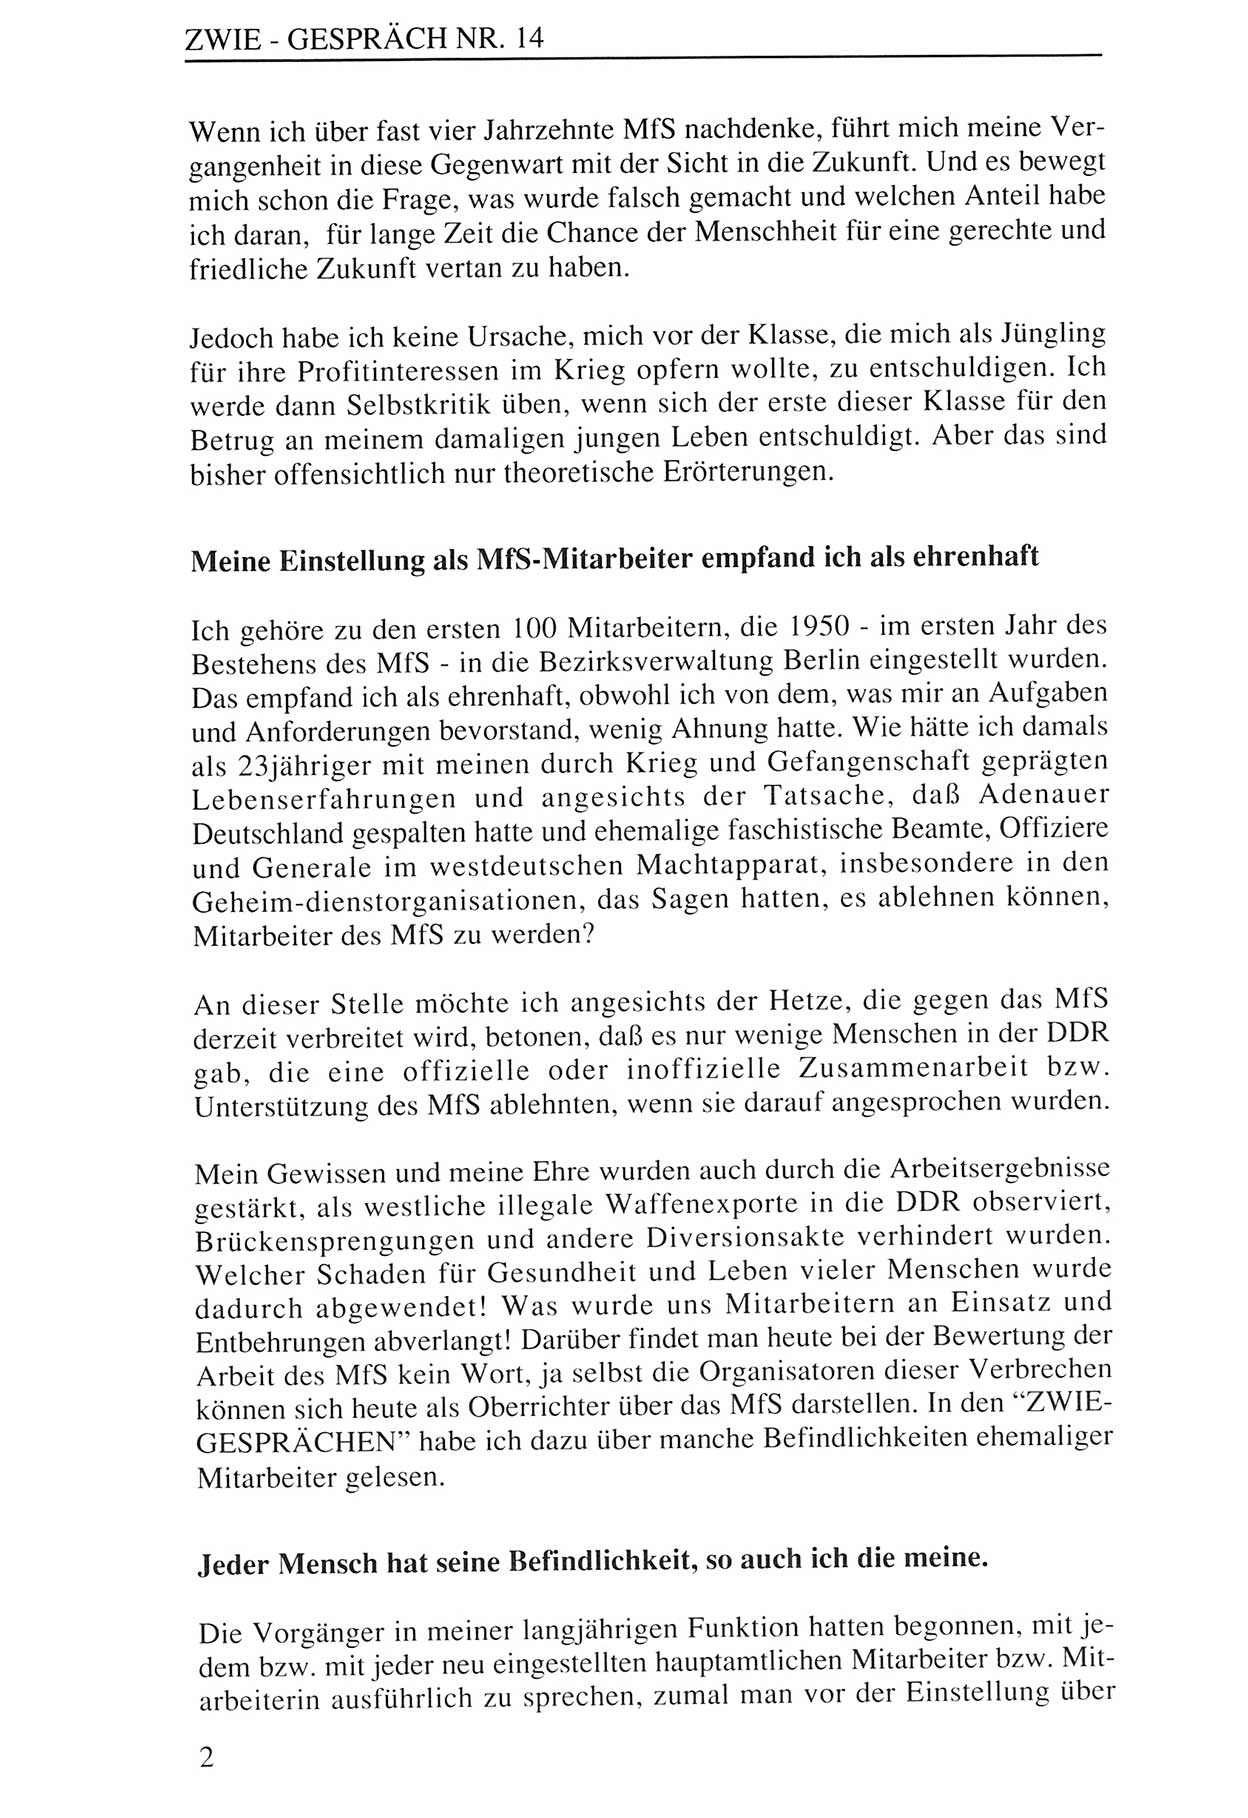 Zwie-Gespräch, Beiträge zur Aufarbeitung der Staatssicherheits-Vergangenheit [Deutsche Demokratische Republik (DDR)], Ausgabe Nr. 14, Berlin 1993, Seite 2 (Zwie-Gespr. Ausg. 14 1993, S. 2)